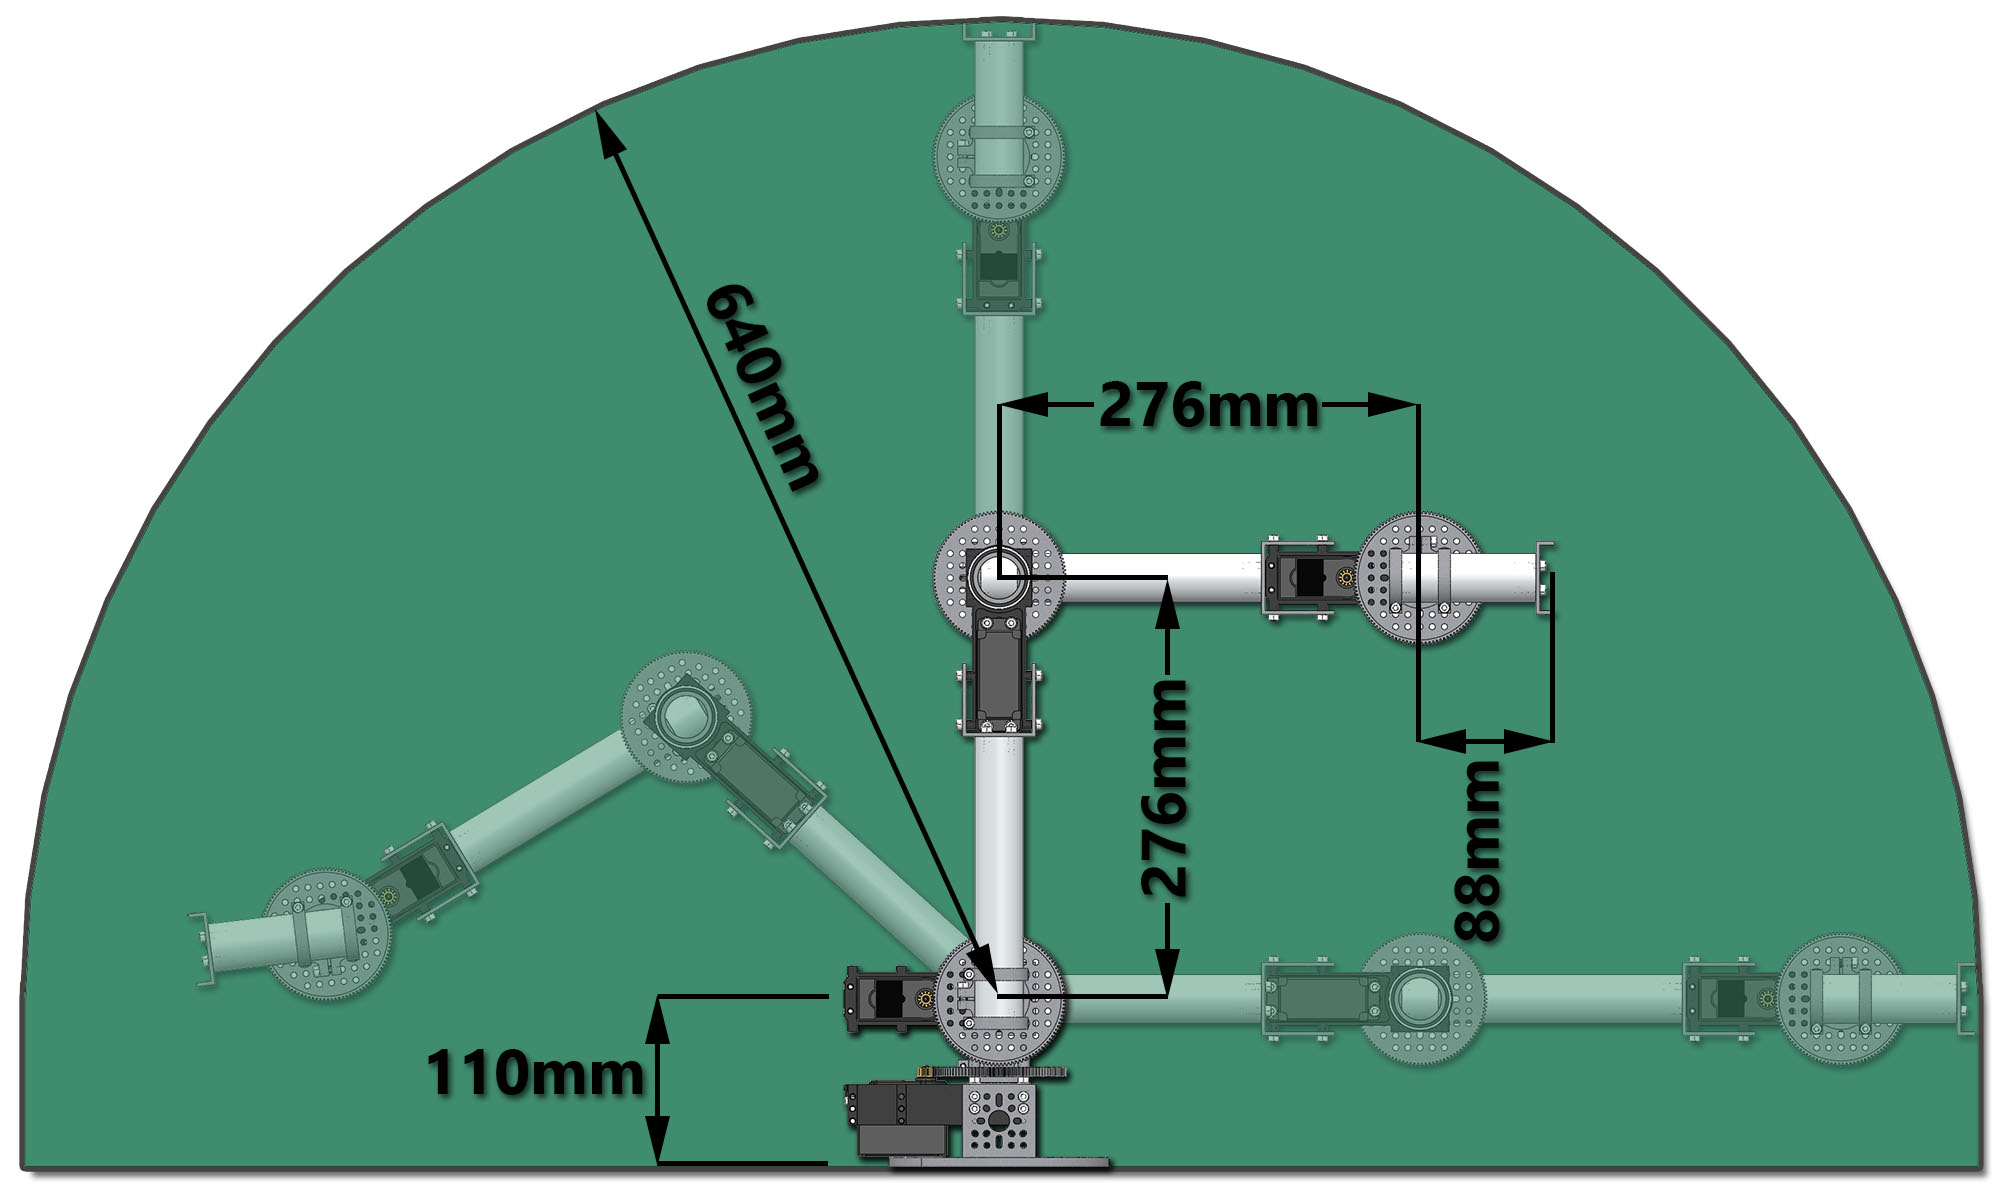 Dimensiones del Kit de Brazo Robótico M100RAK de RobotShop